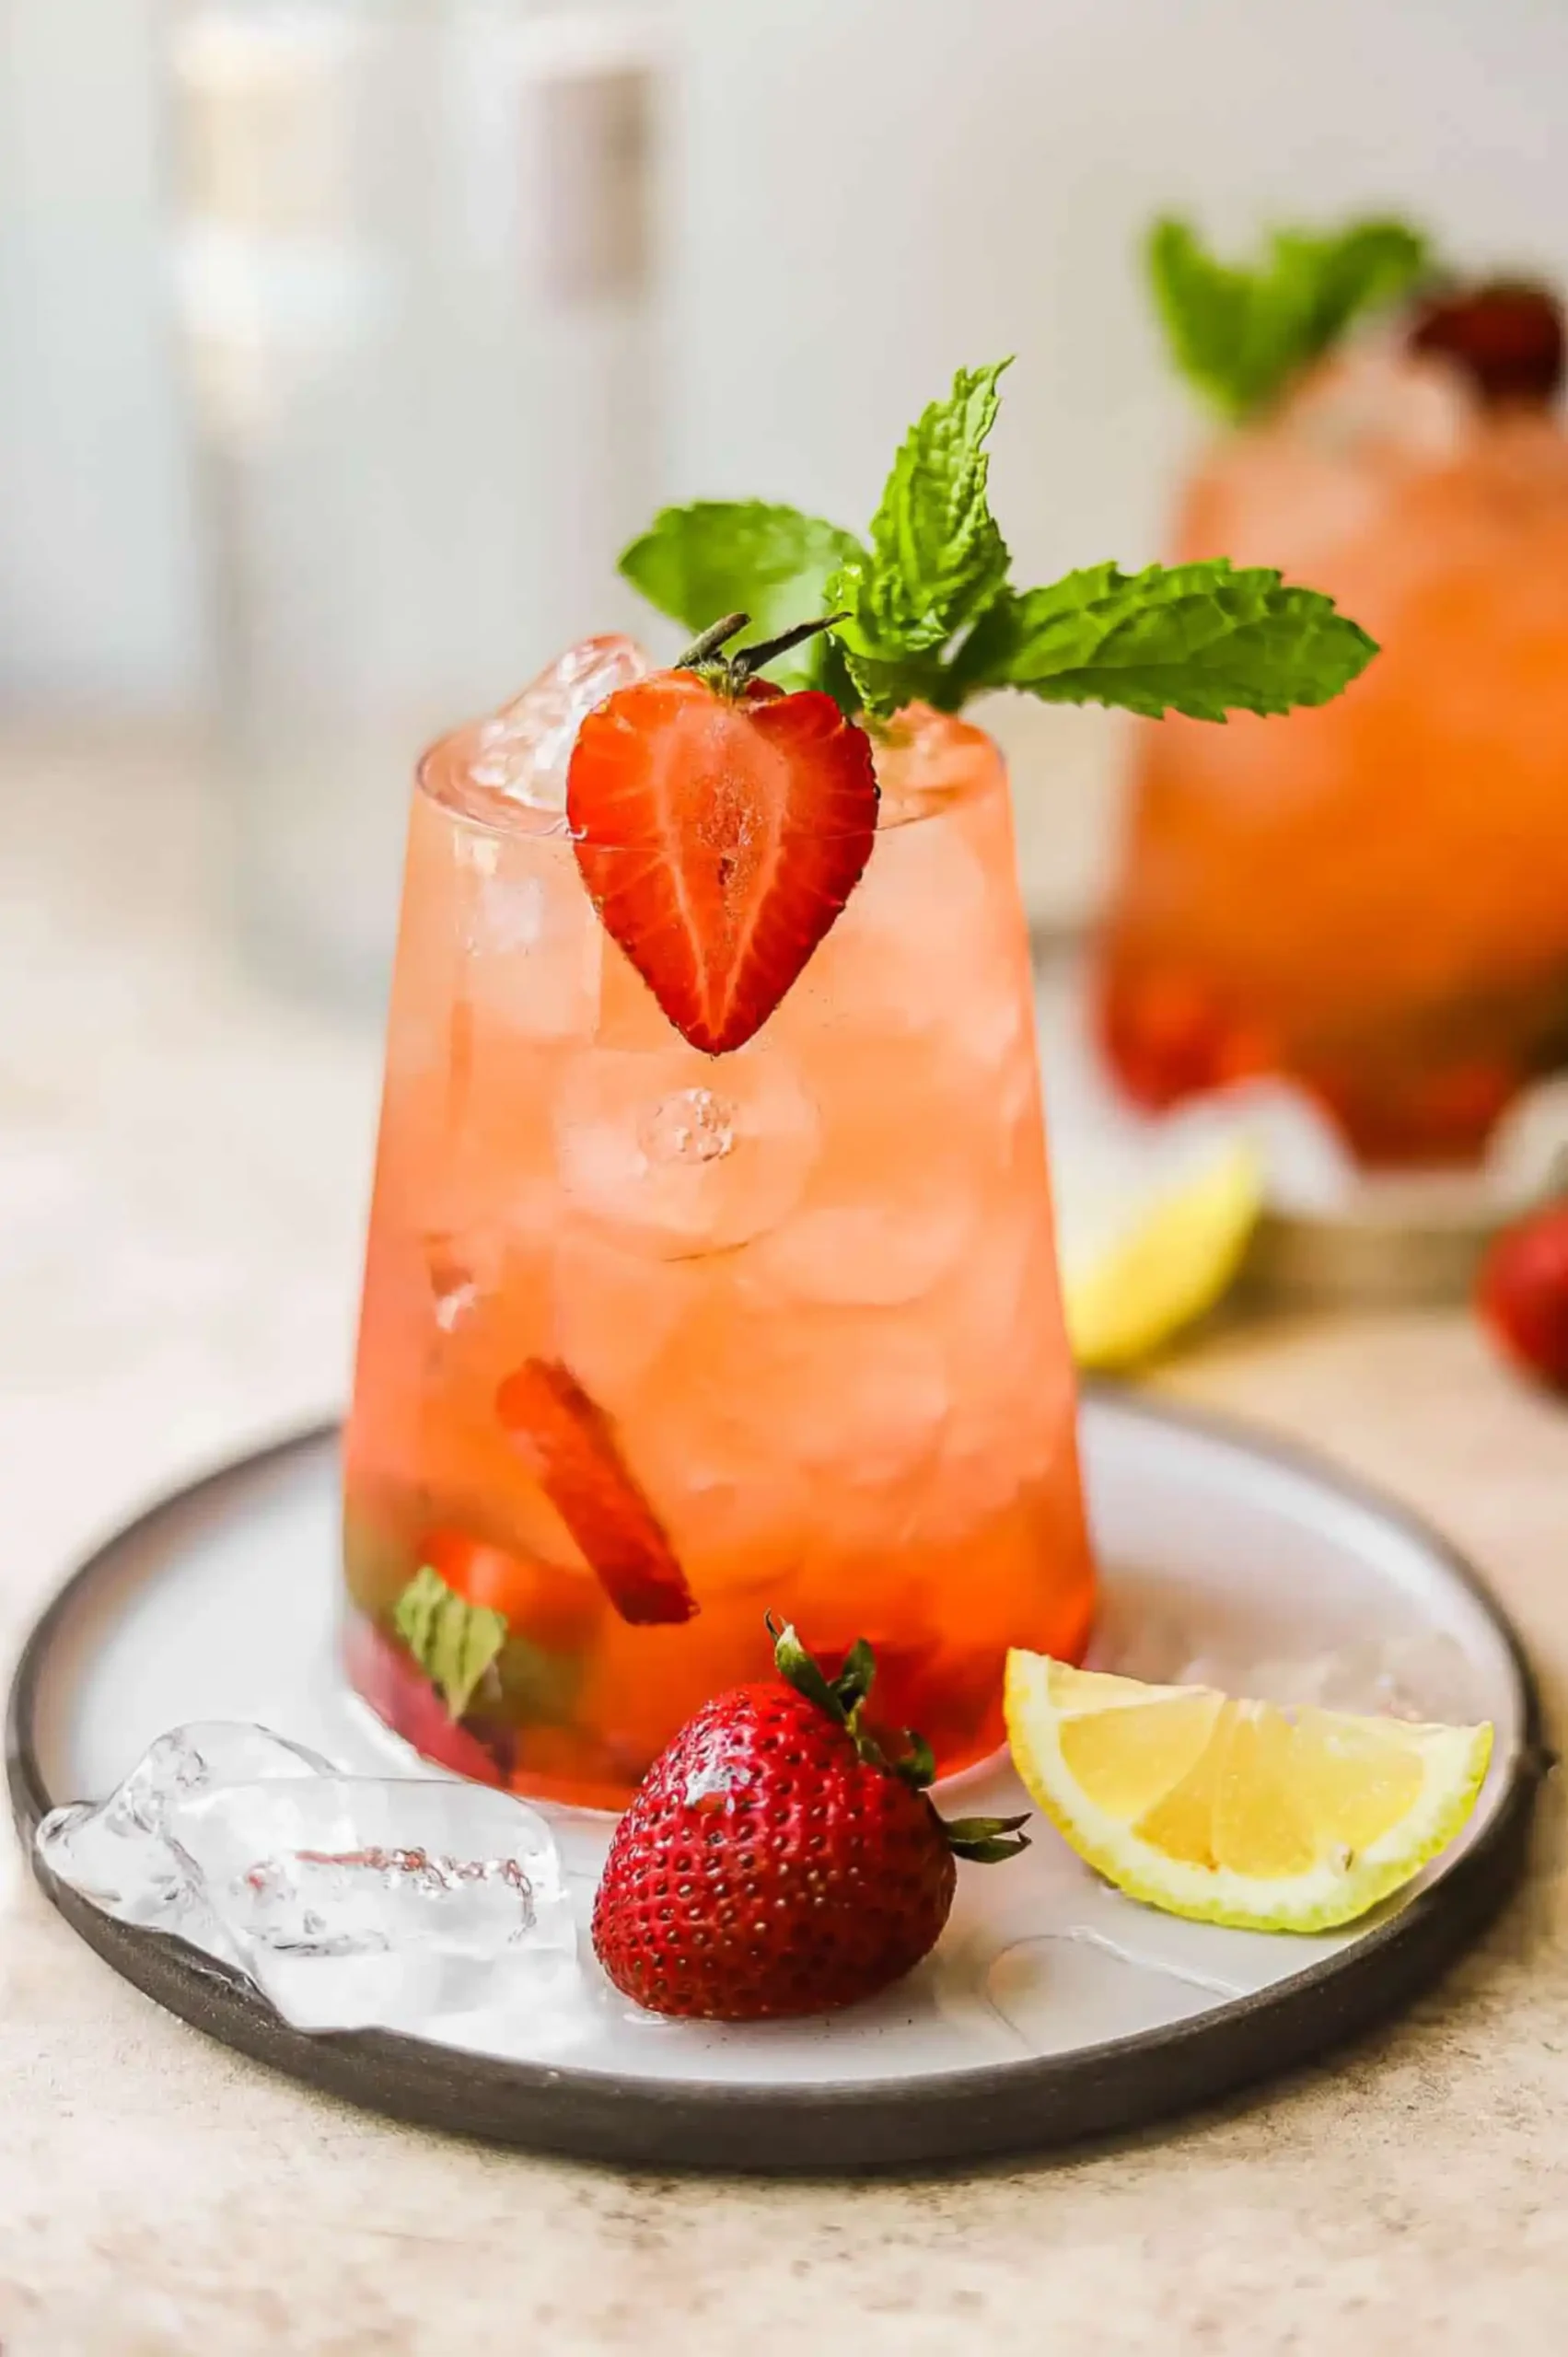 لیموناد توت فرنگی، یکی از نوشیدنی های خنک تابستانه